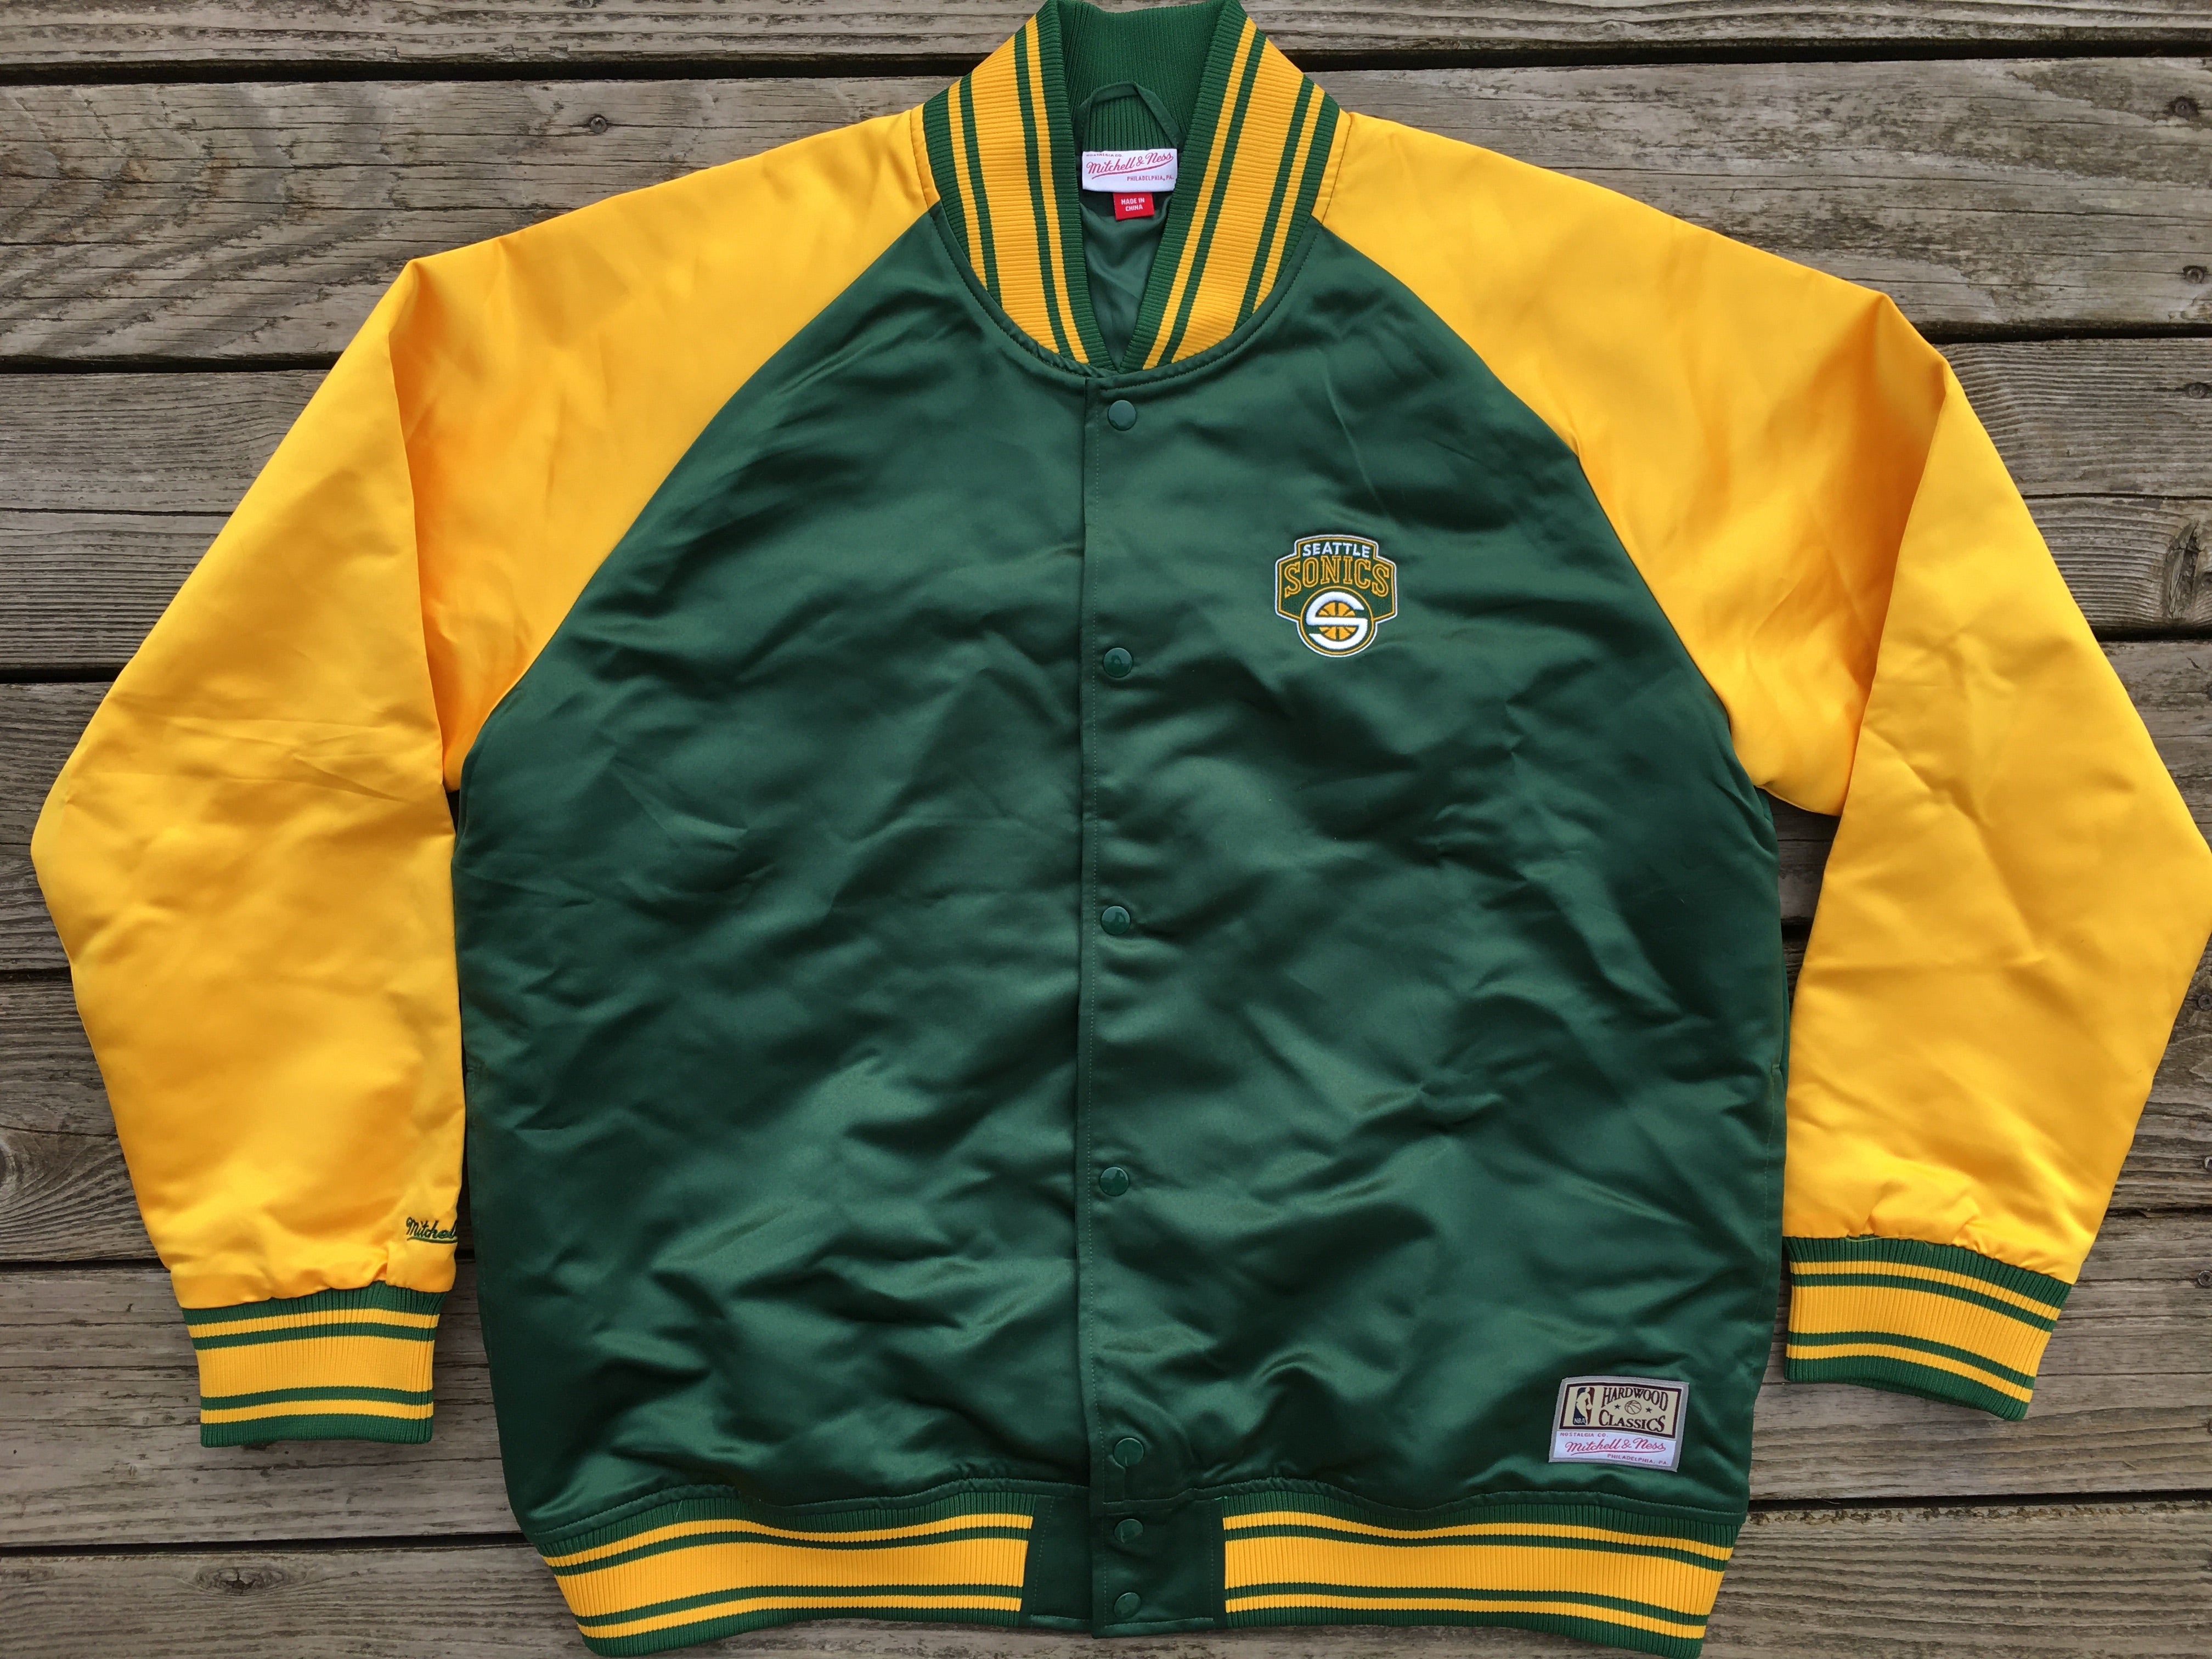 Dodgers vintage jacket - Gem